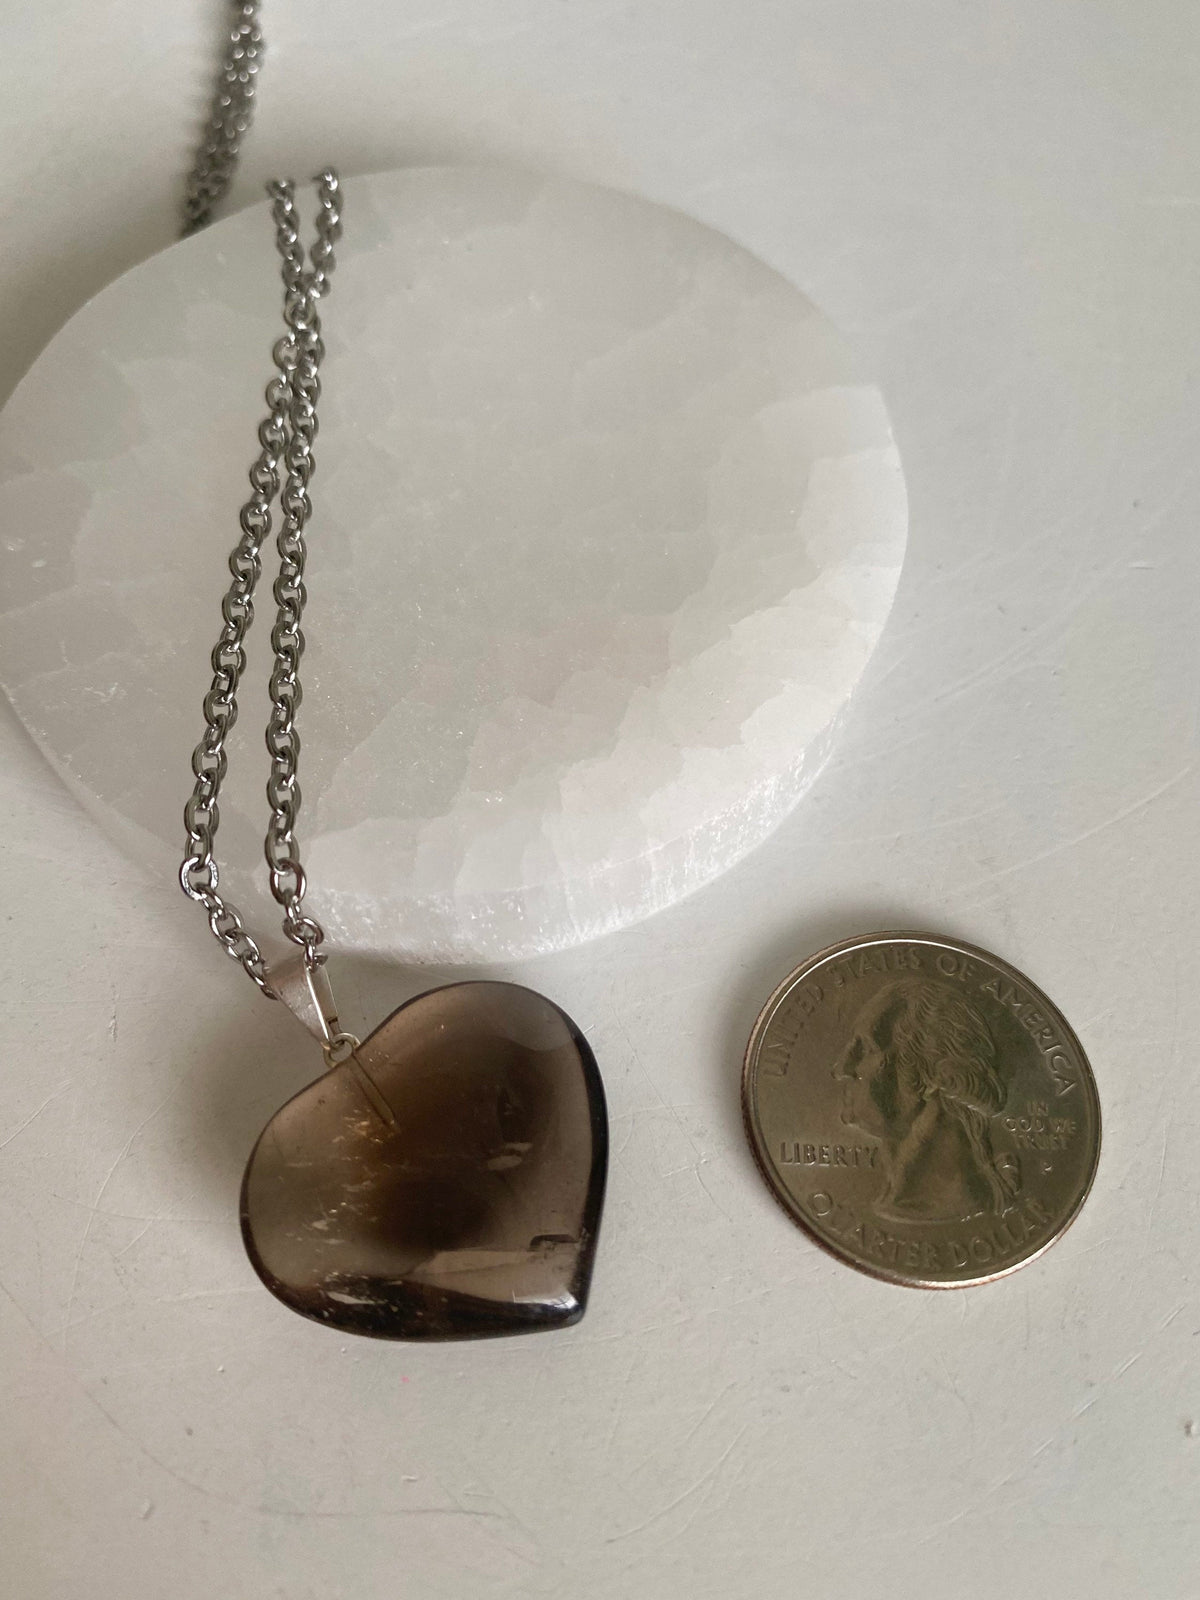 Smoky Quartz Heart Pendant with FREE chain | Smoky Quartz Necklace |